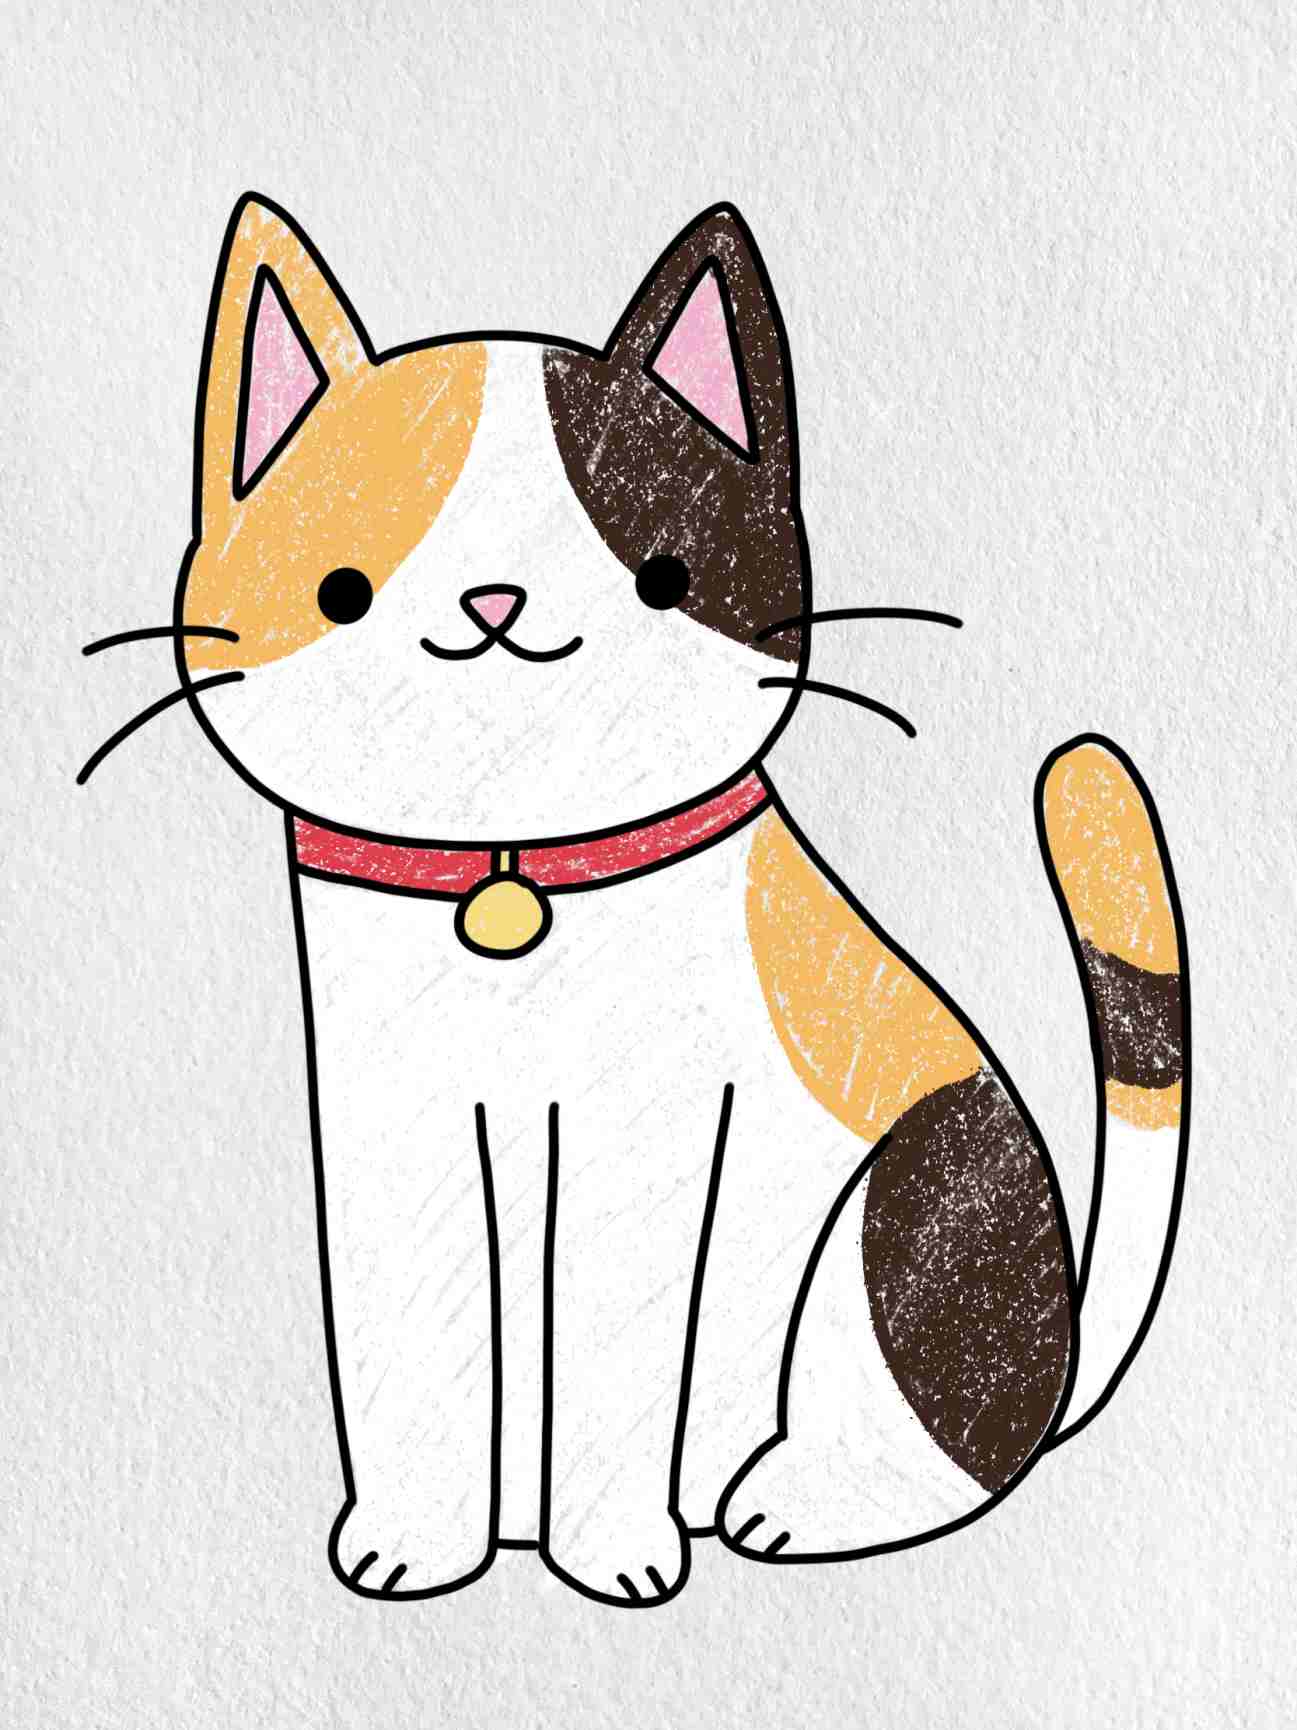 Cách Vẽ Con Mèo Đẹp Nhất - Cách Vẽ Cách Vẽ Con Mèo Cực Dễ Cho Người Mới Học